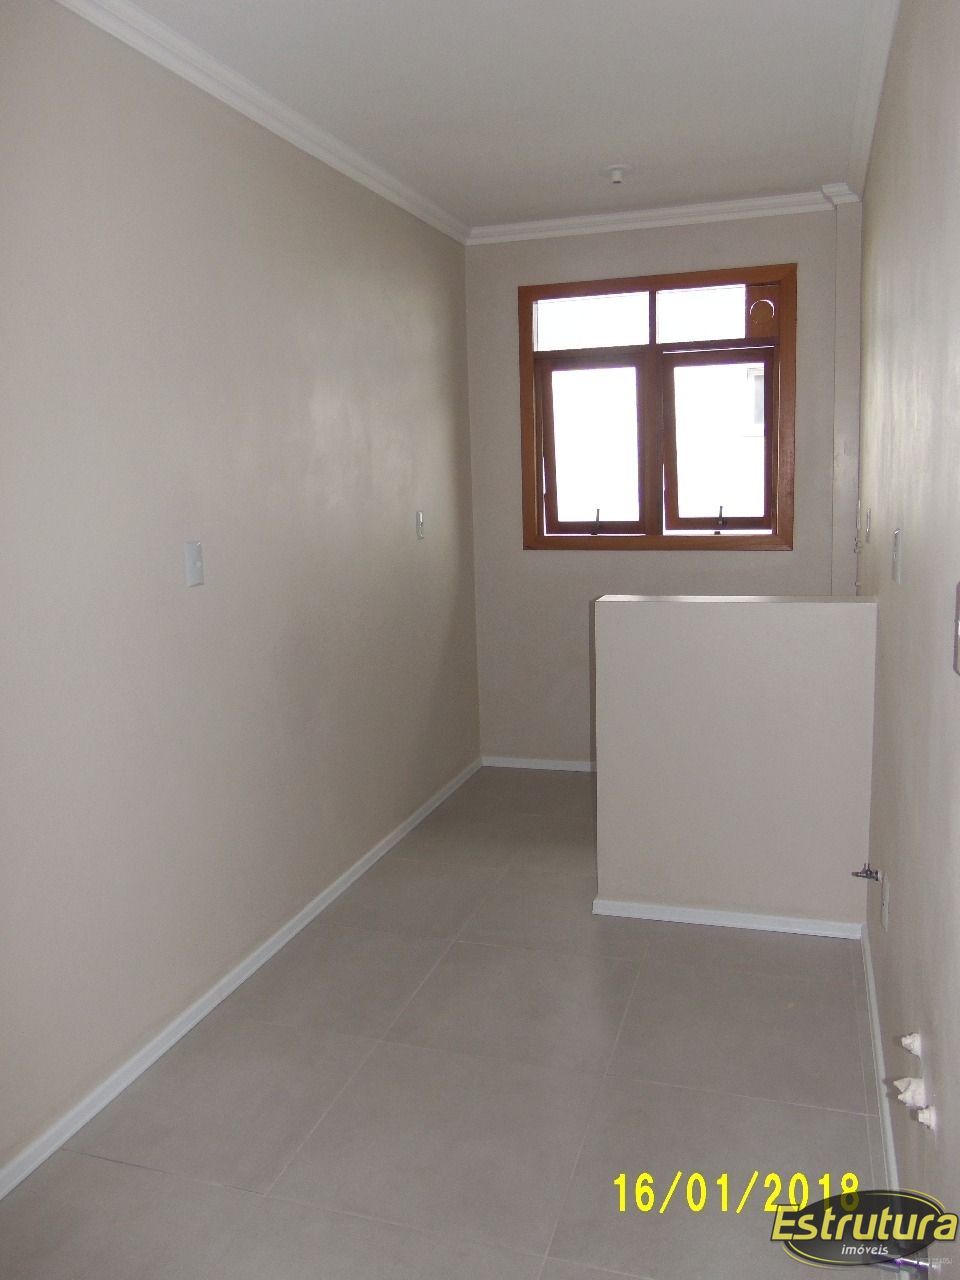 Apartamento com 2 Dormitórios à venda, 62 m² por R$ 320.000,00